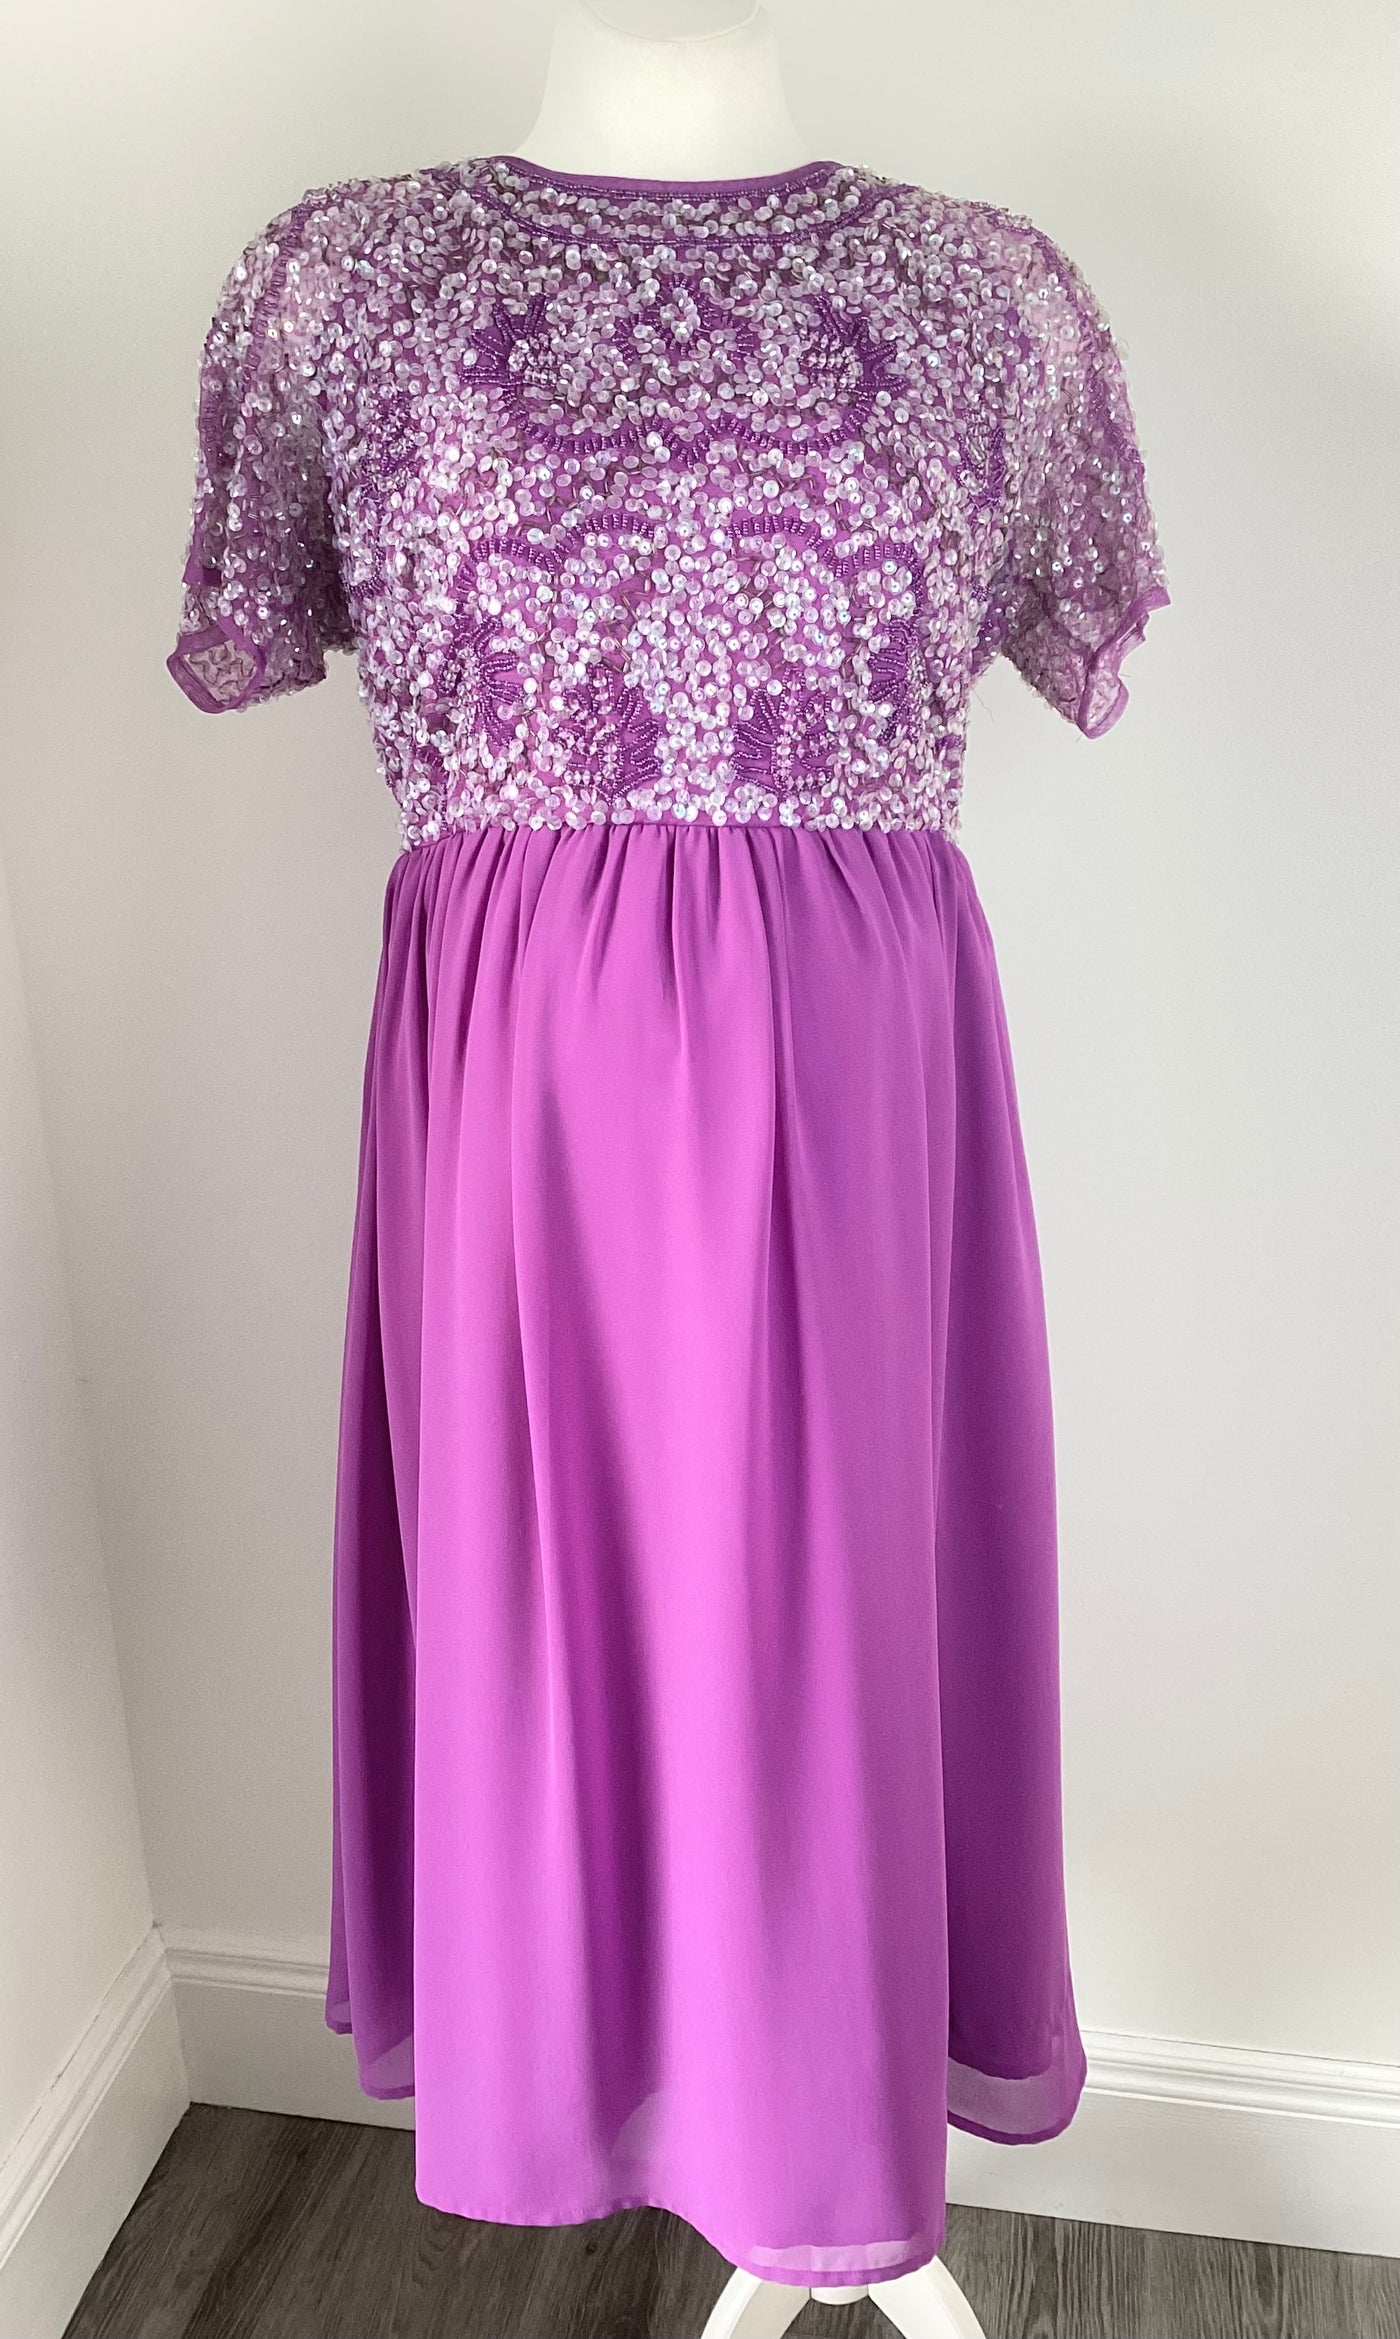 Purple sequin top midi dress (no label) - Size 12/14